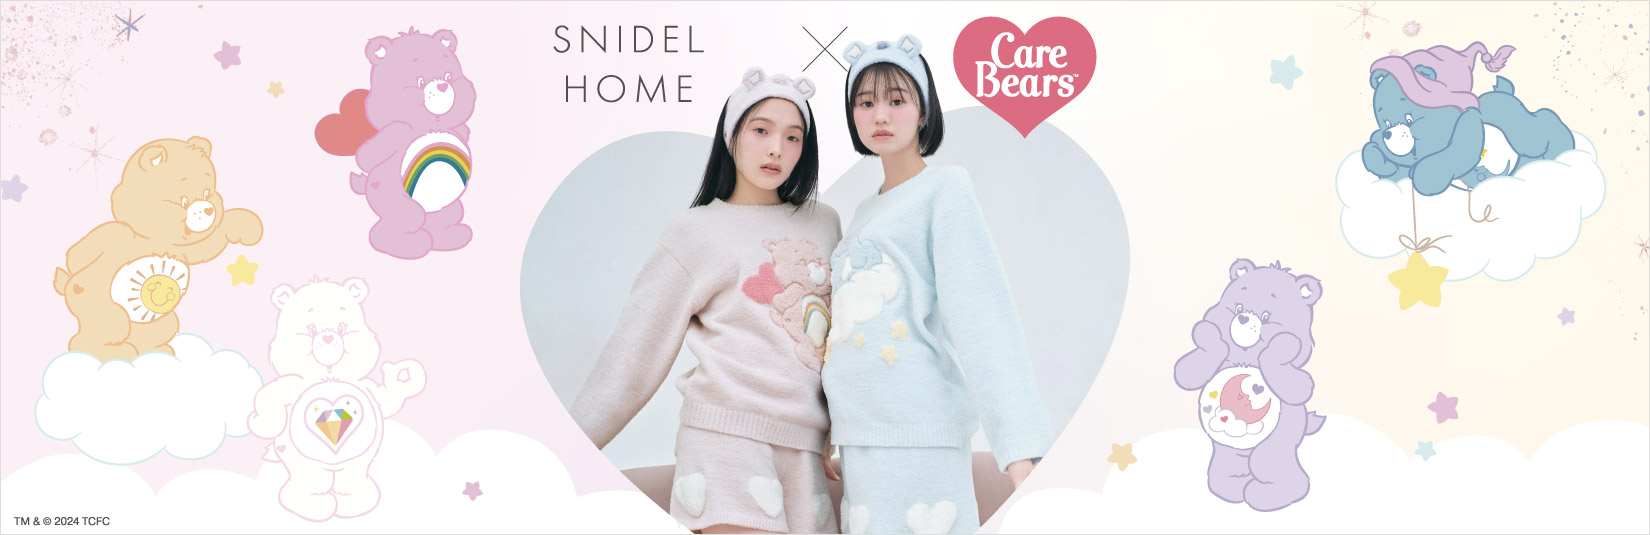 【いよいよ販売スタート！】Care Bears(ケアベア)とSNIDEL HOME(スナイデル ホーム)の初コラボレーションアイテム